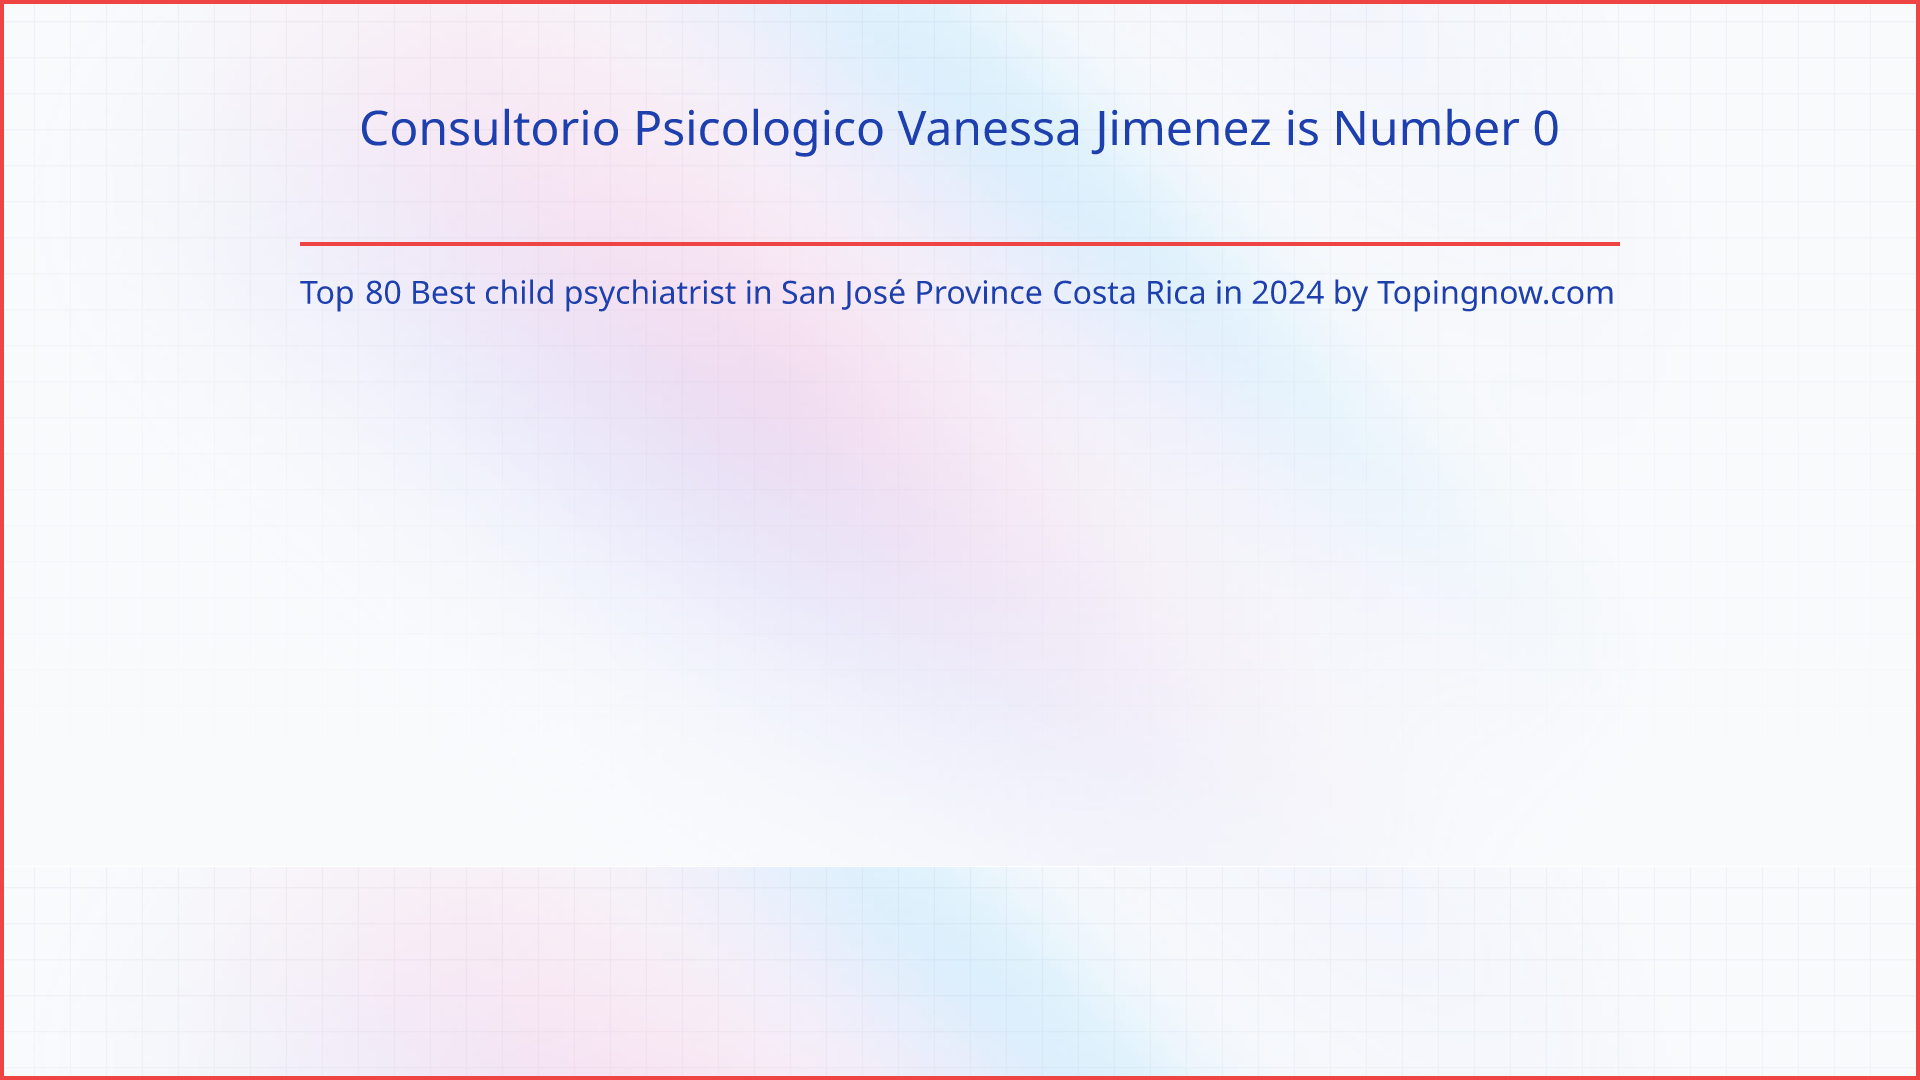 Consultorio Psicologico Vanessa Jimenez: Top 80 Best child psychiatrist in San José Province Costa Rica in 2024